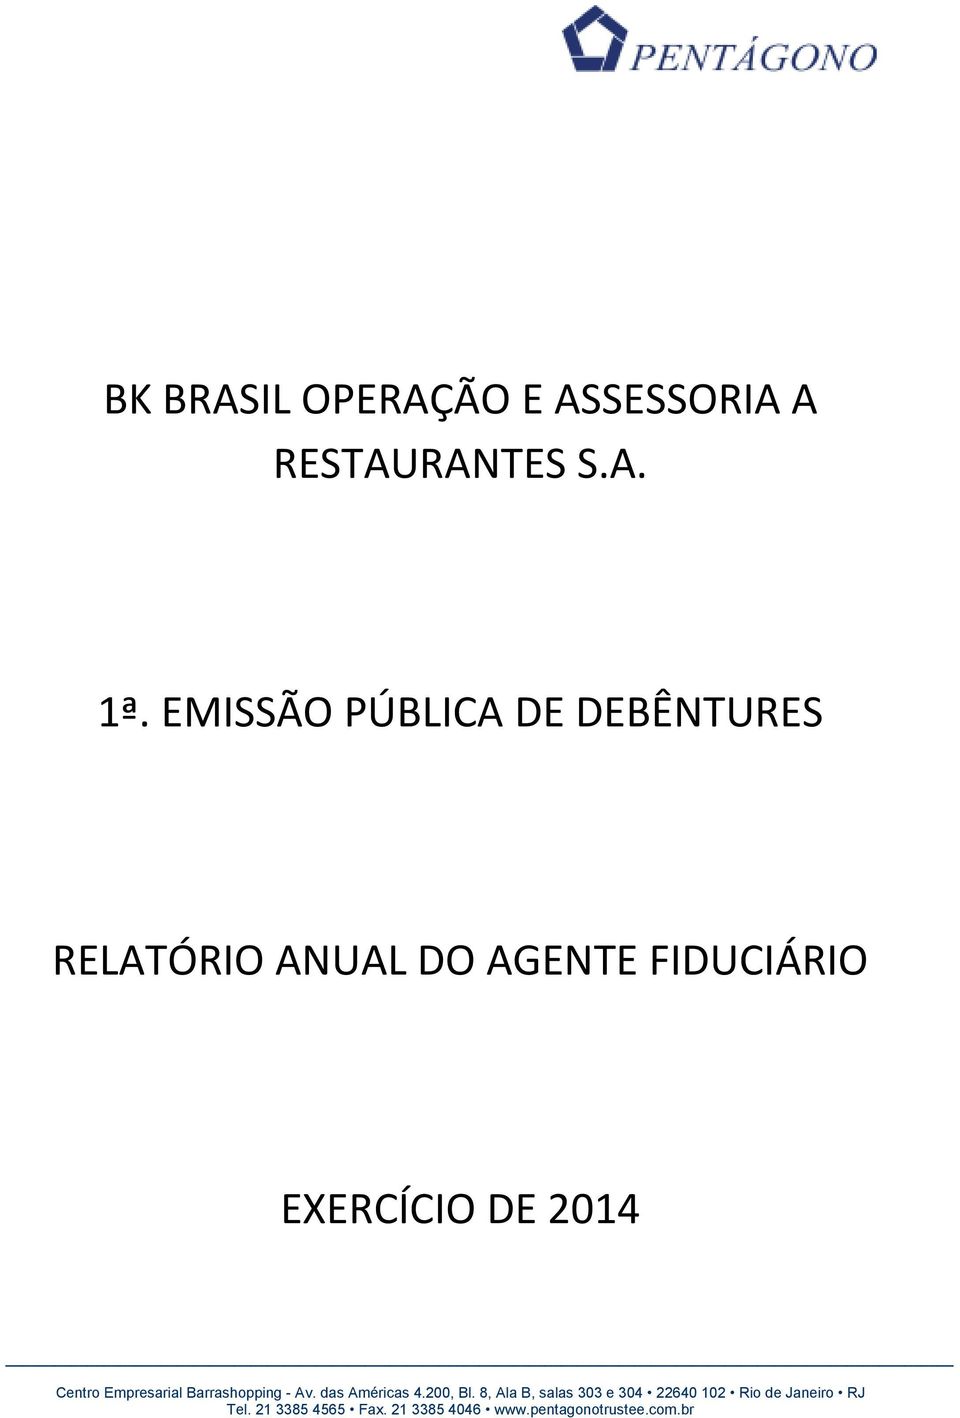 EMISSÃO PÚBLICA DE DEBÊNTURES